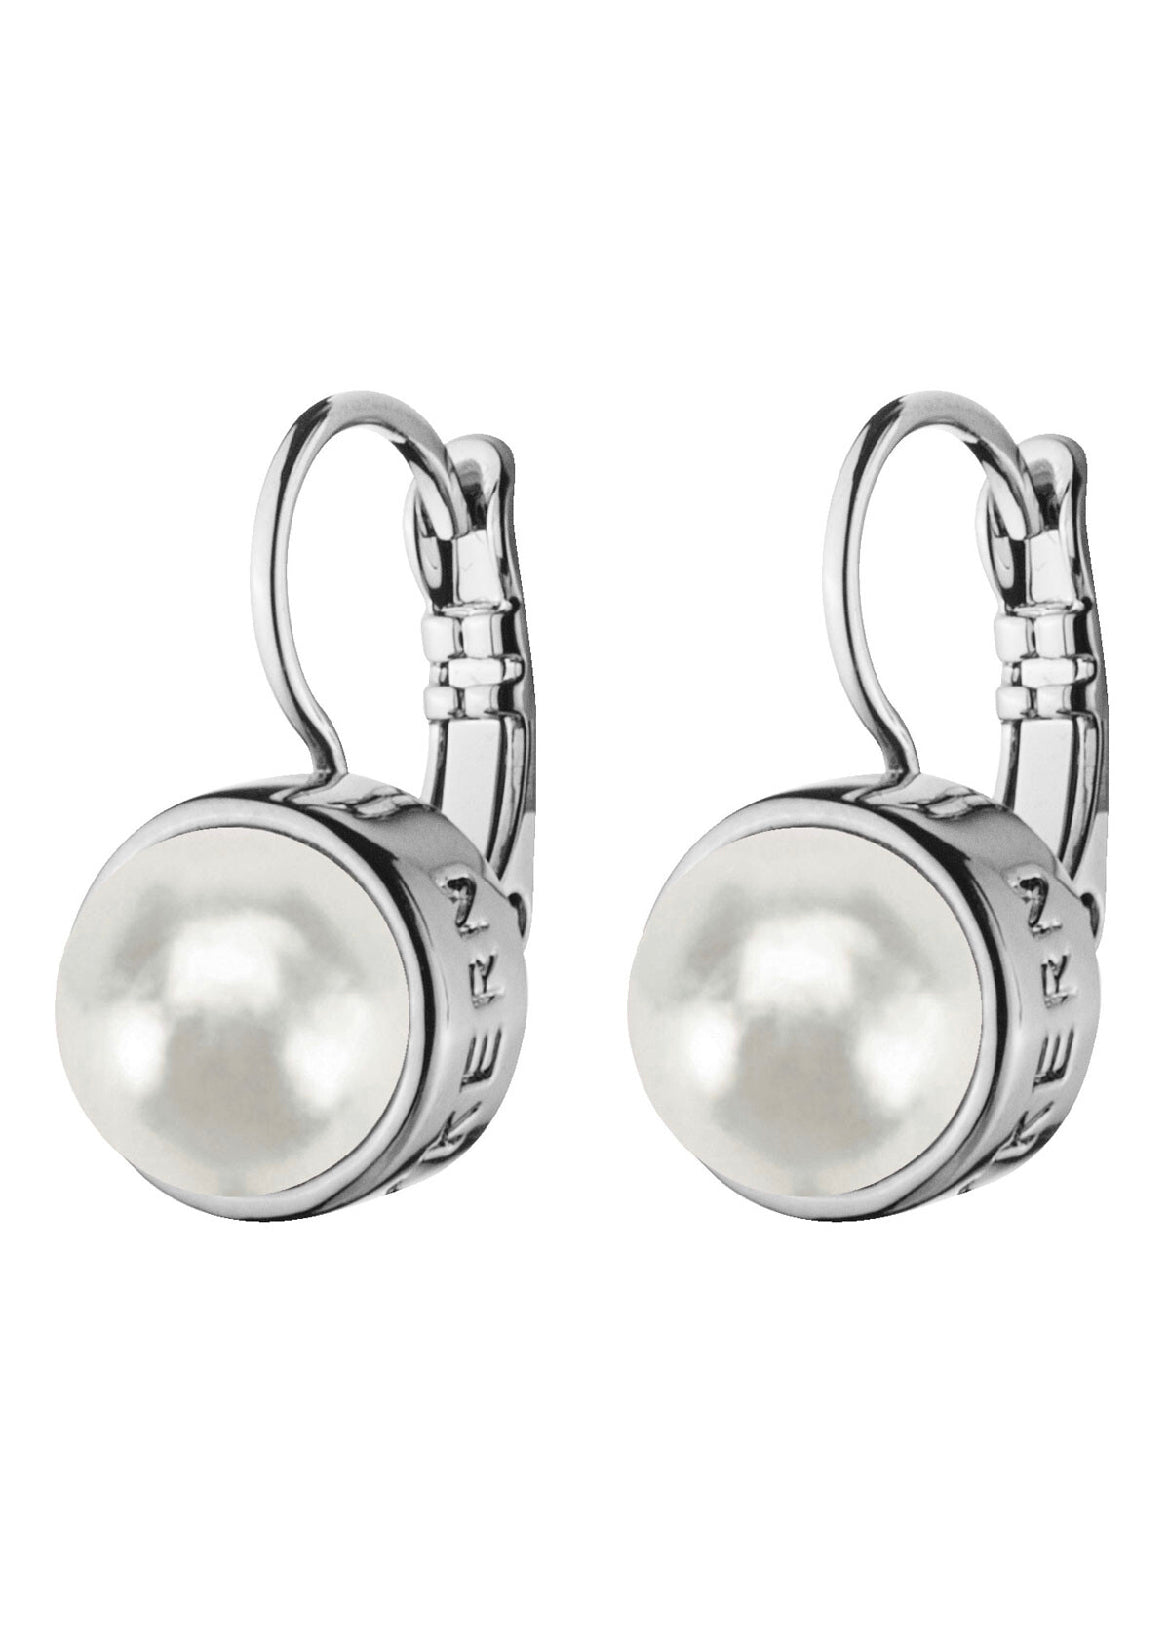 Dyrberg Kern Earrings - Lulu Silver Hook with White Pearl